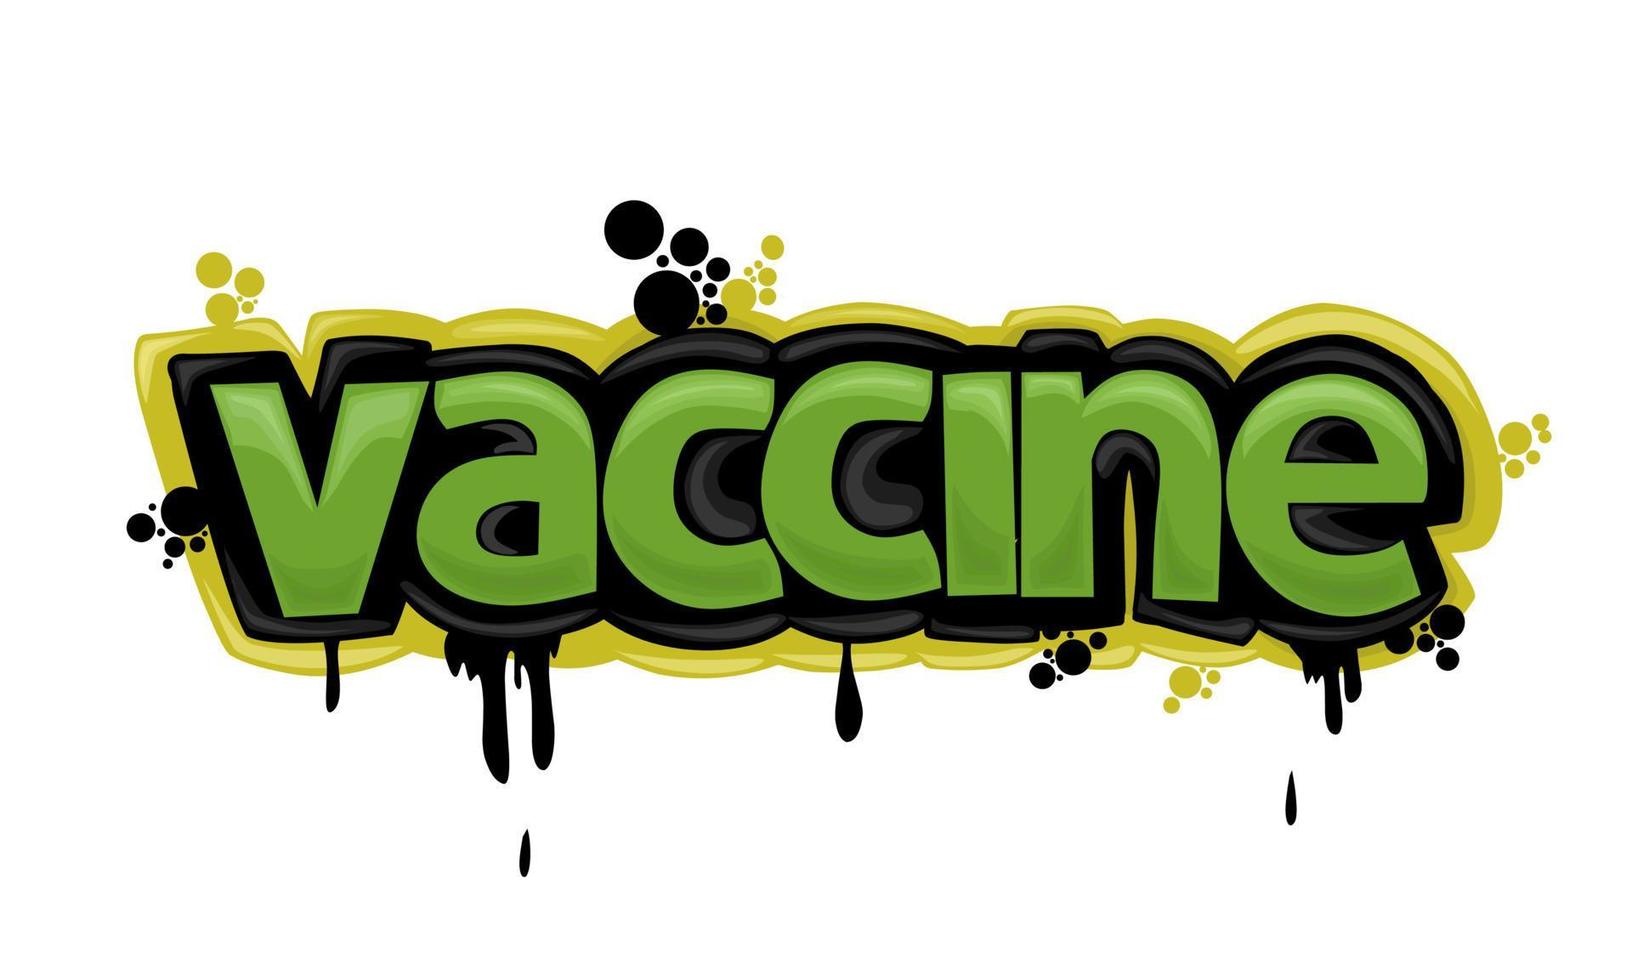 Vacuna escribiendo diseño de graffiti sobre un fondo blanco. vector